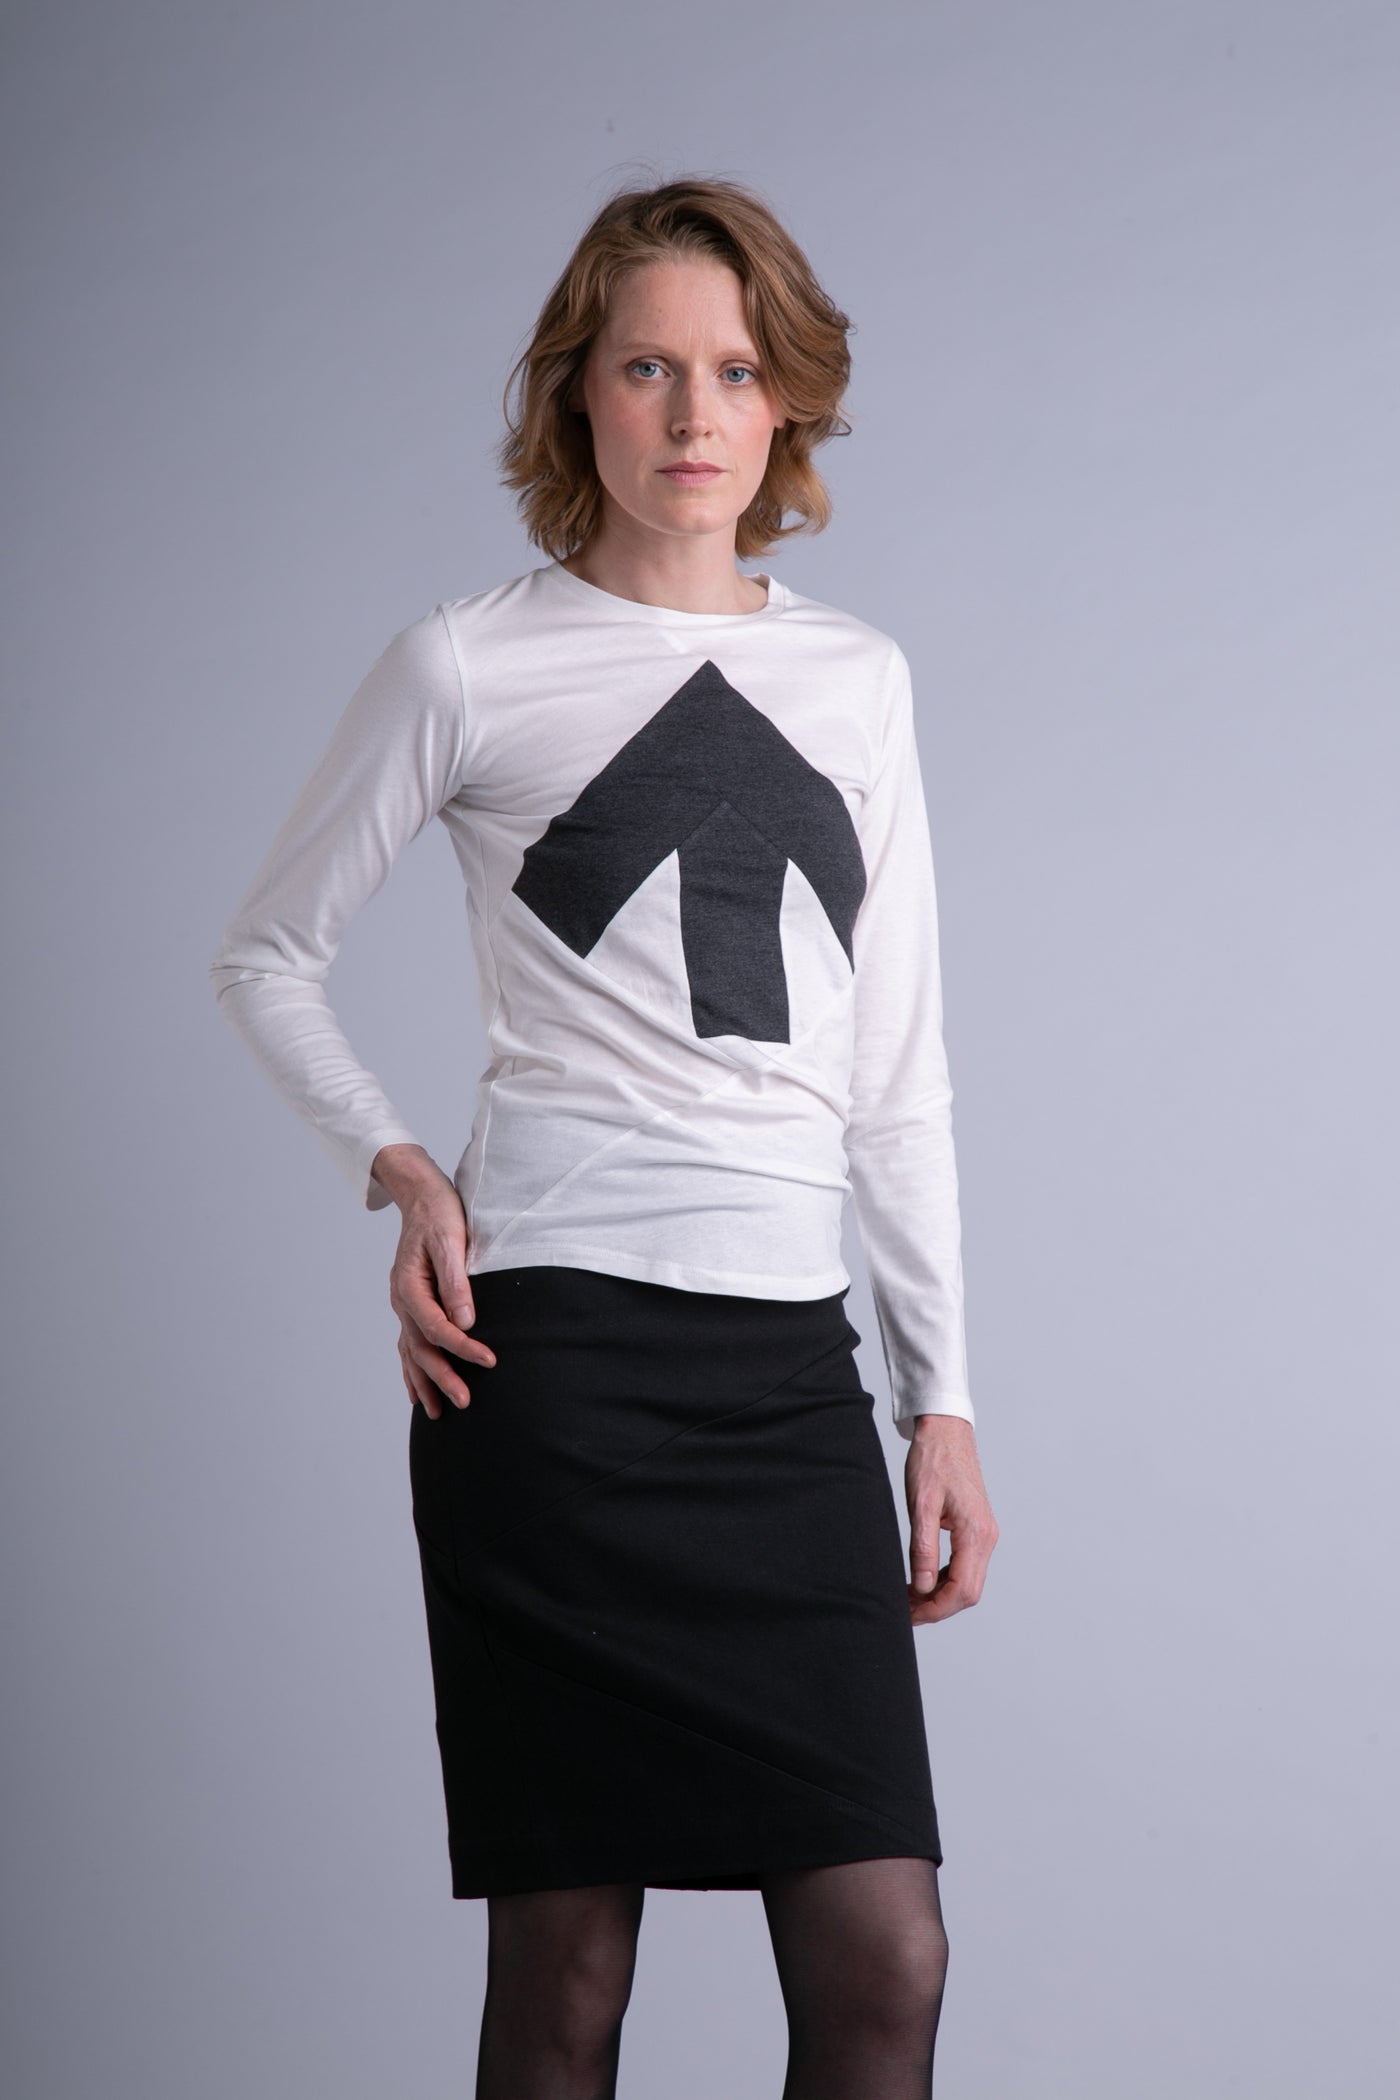 Up-Shirt für Damen, lange Ärmel | Weiß, dunkelgrau